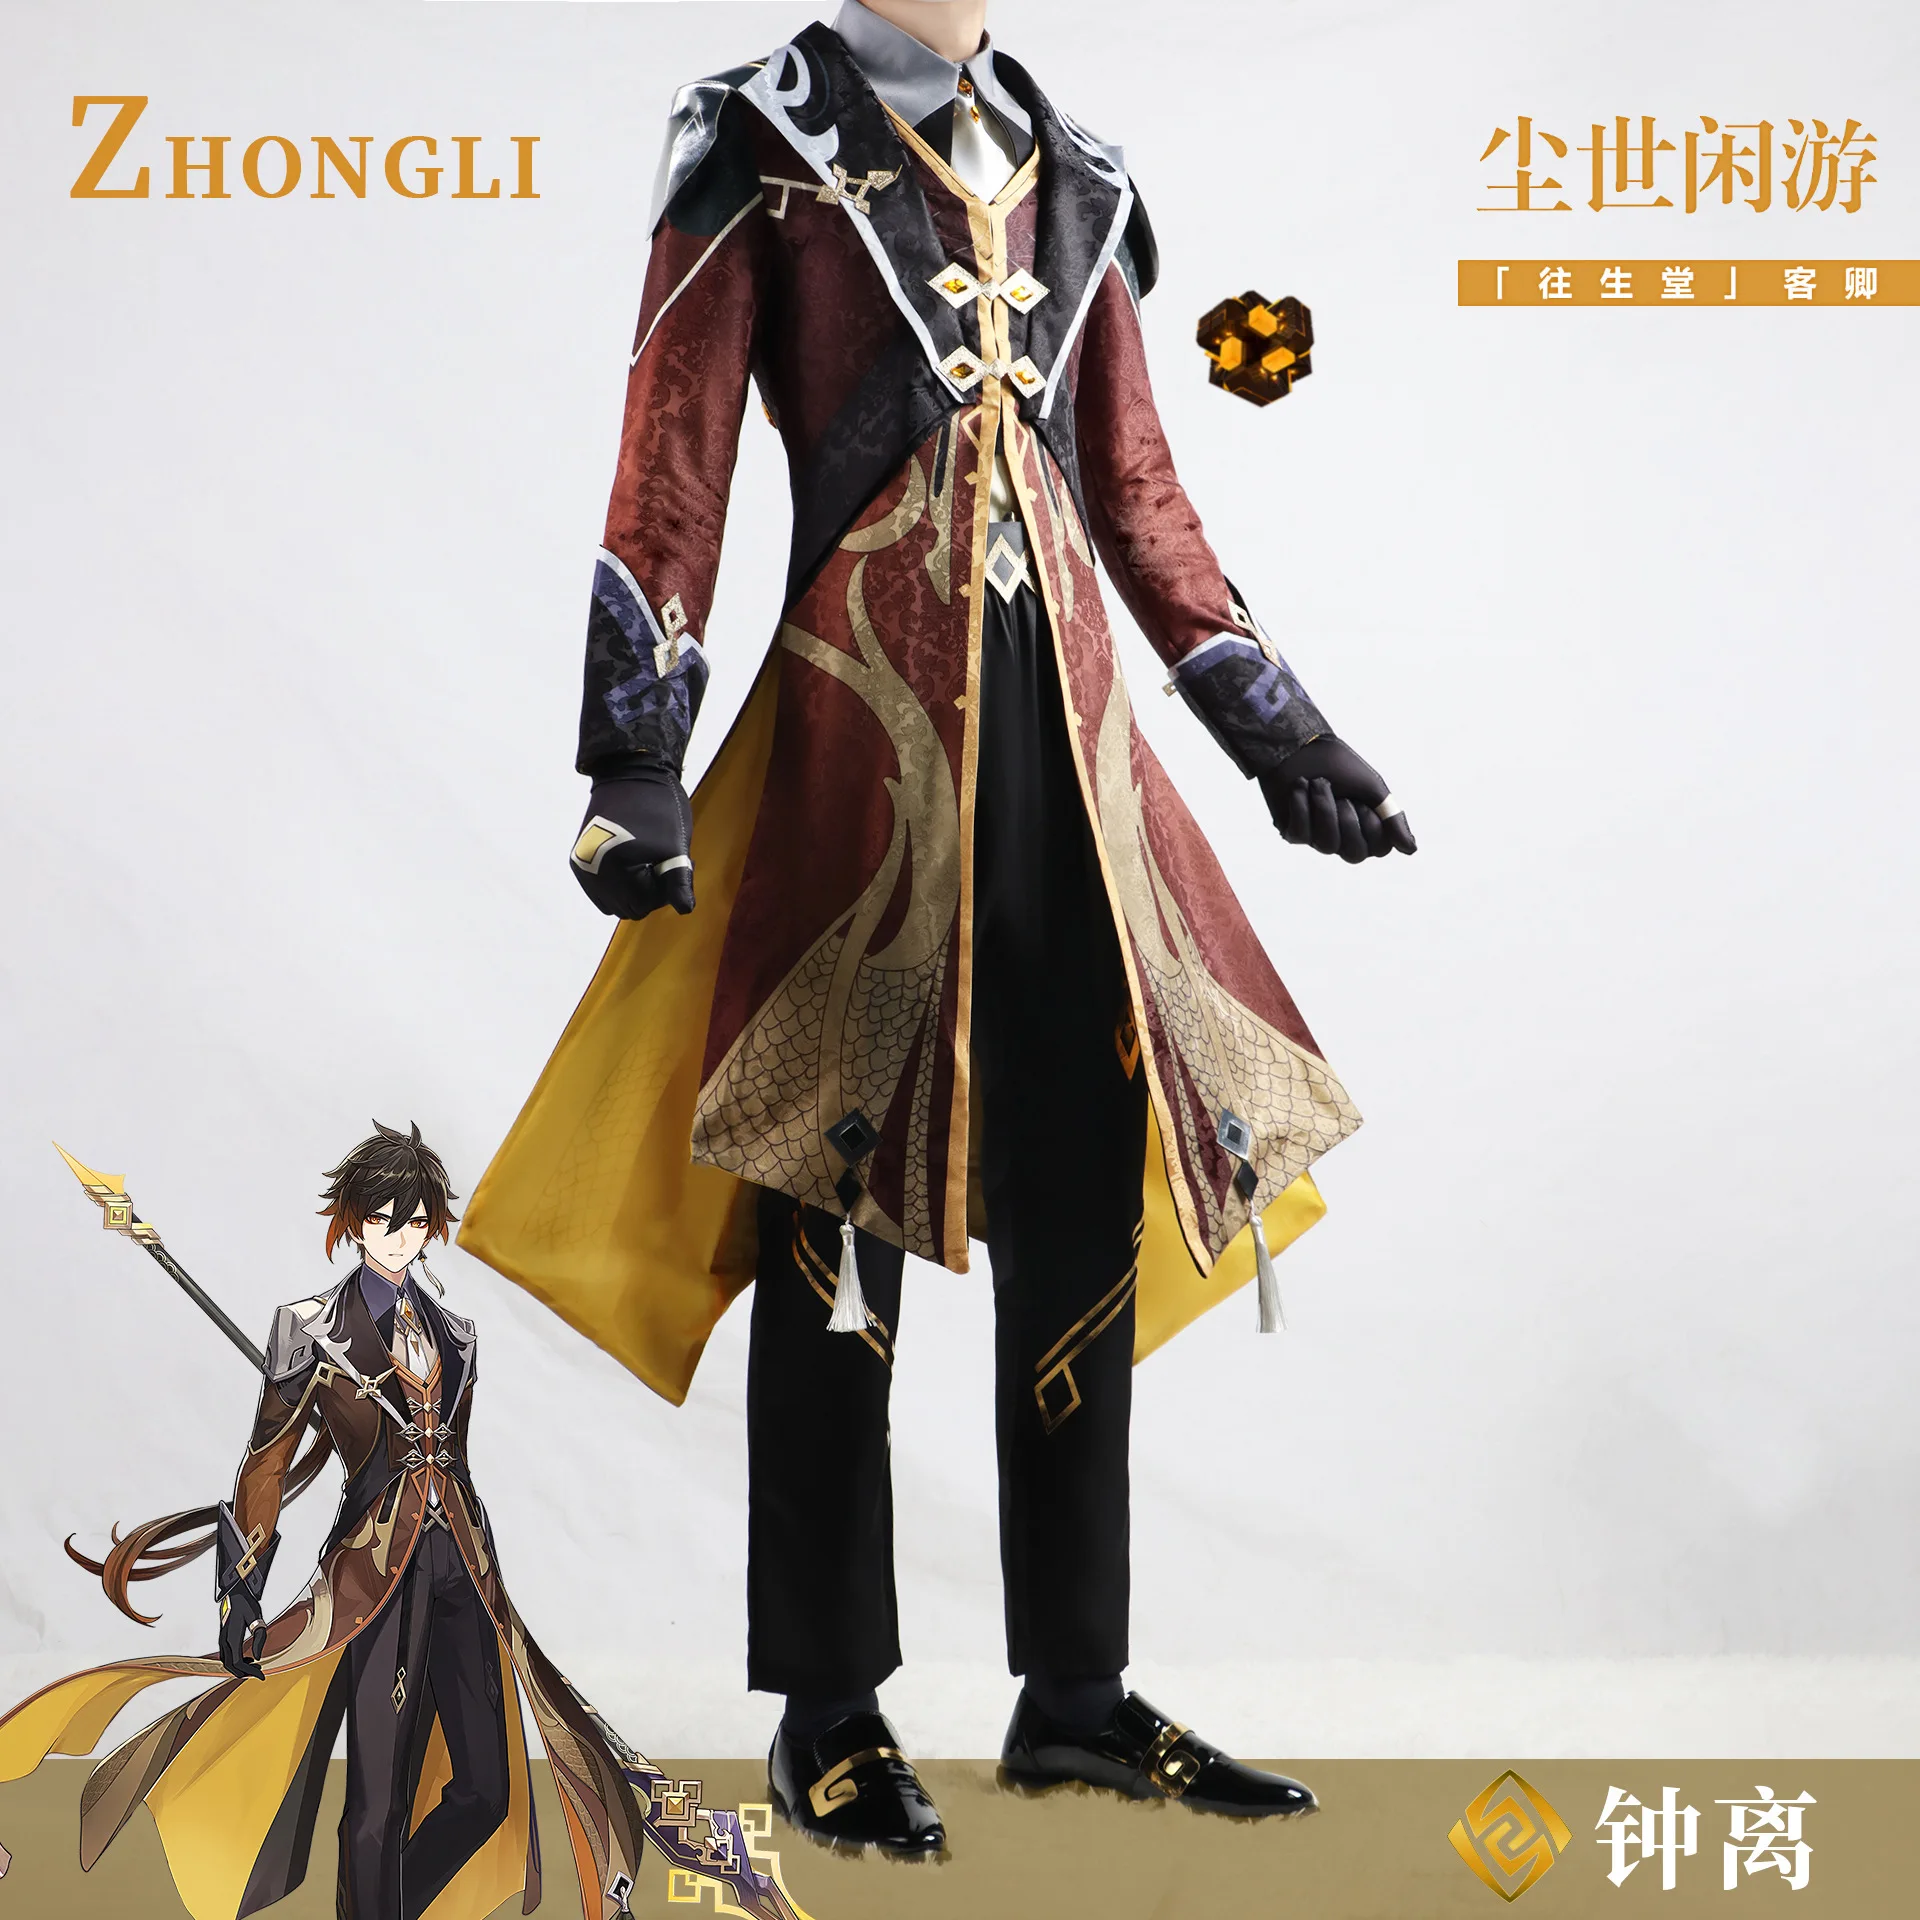 

Zhongli Cosplay Game Genshin Impact Costume In Stock Geo Archon Morax Zhongli Men's Role Play Uniform Halloween Carnival